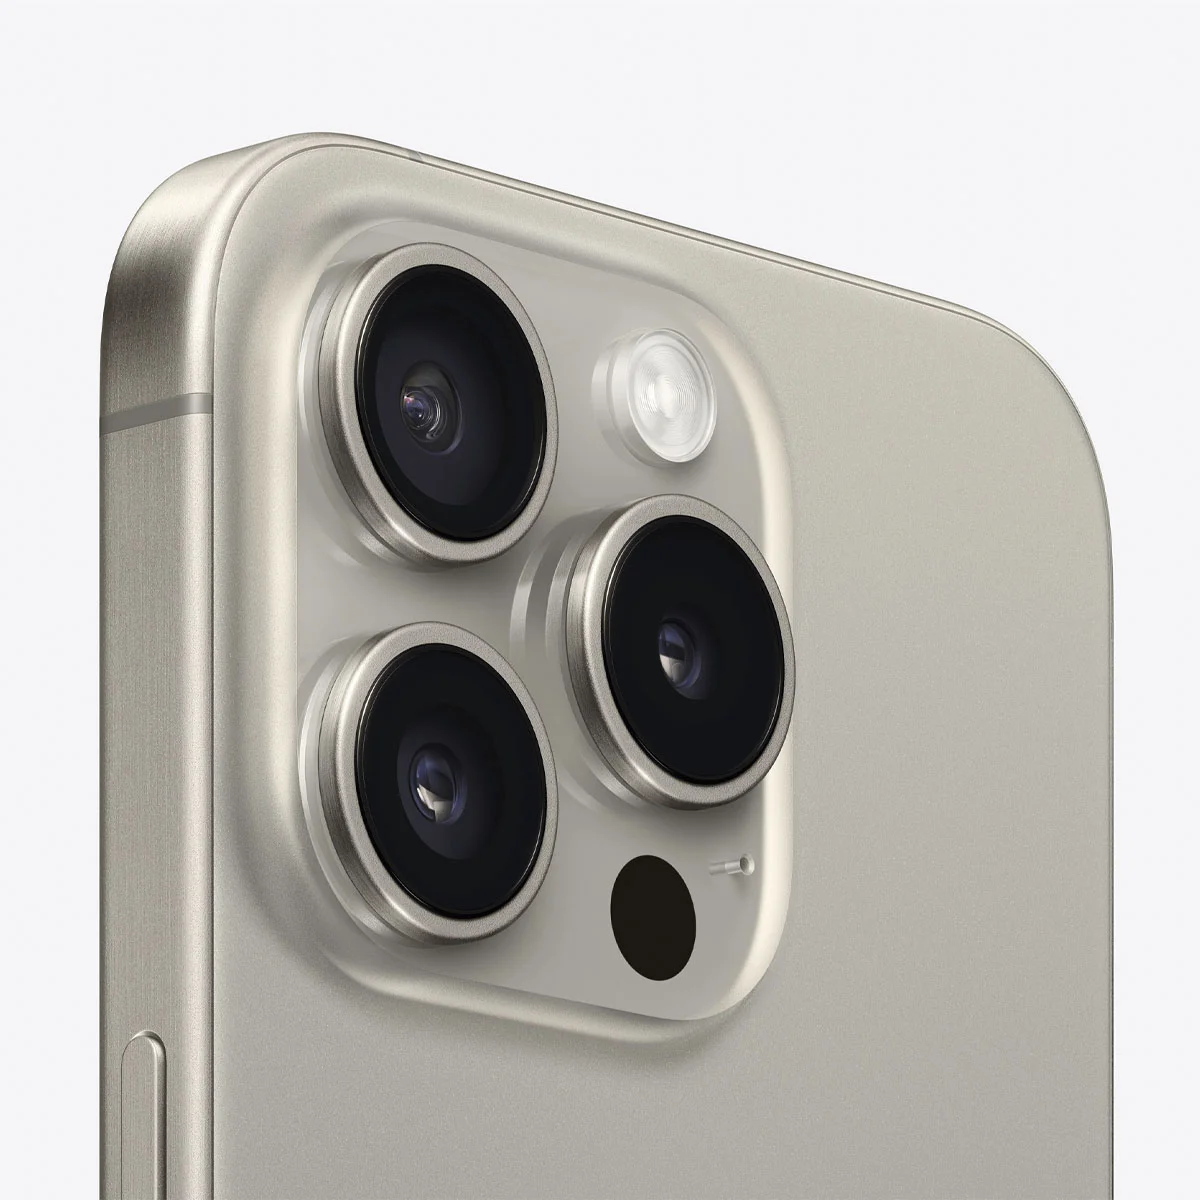 Celular iPhone 15 Pro Max 256GB color titanio natural Marca: Apple